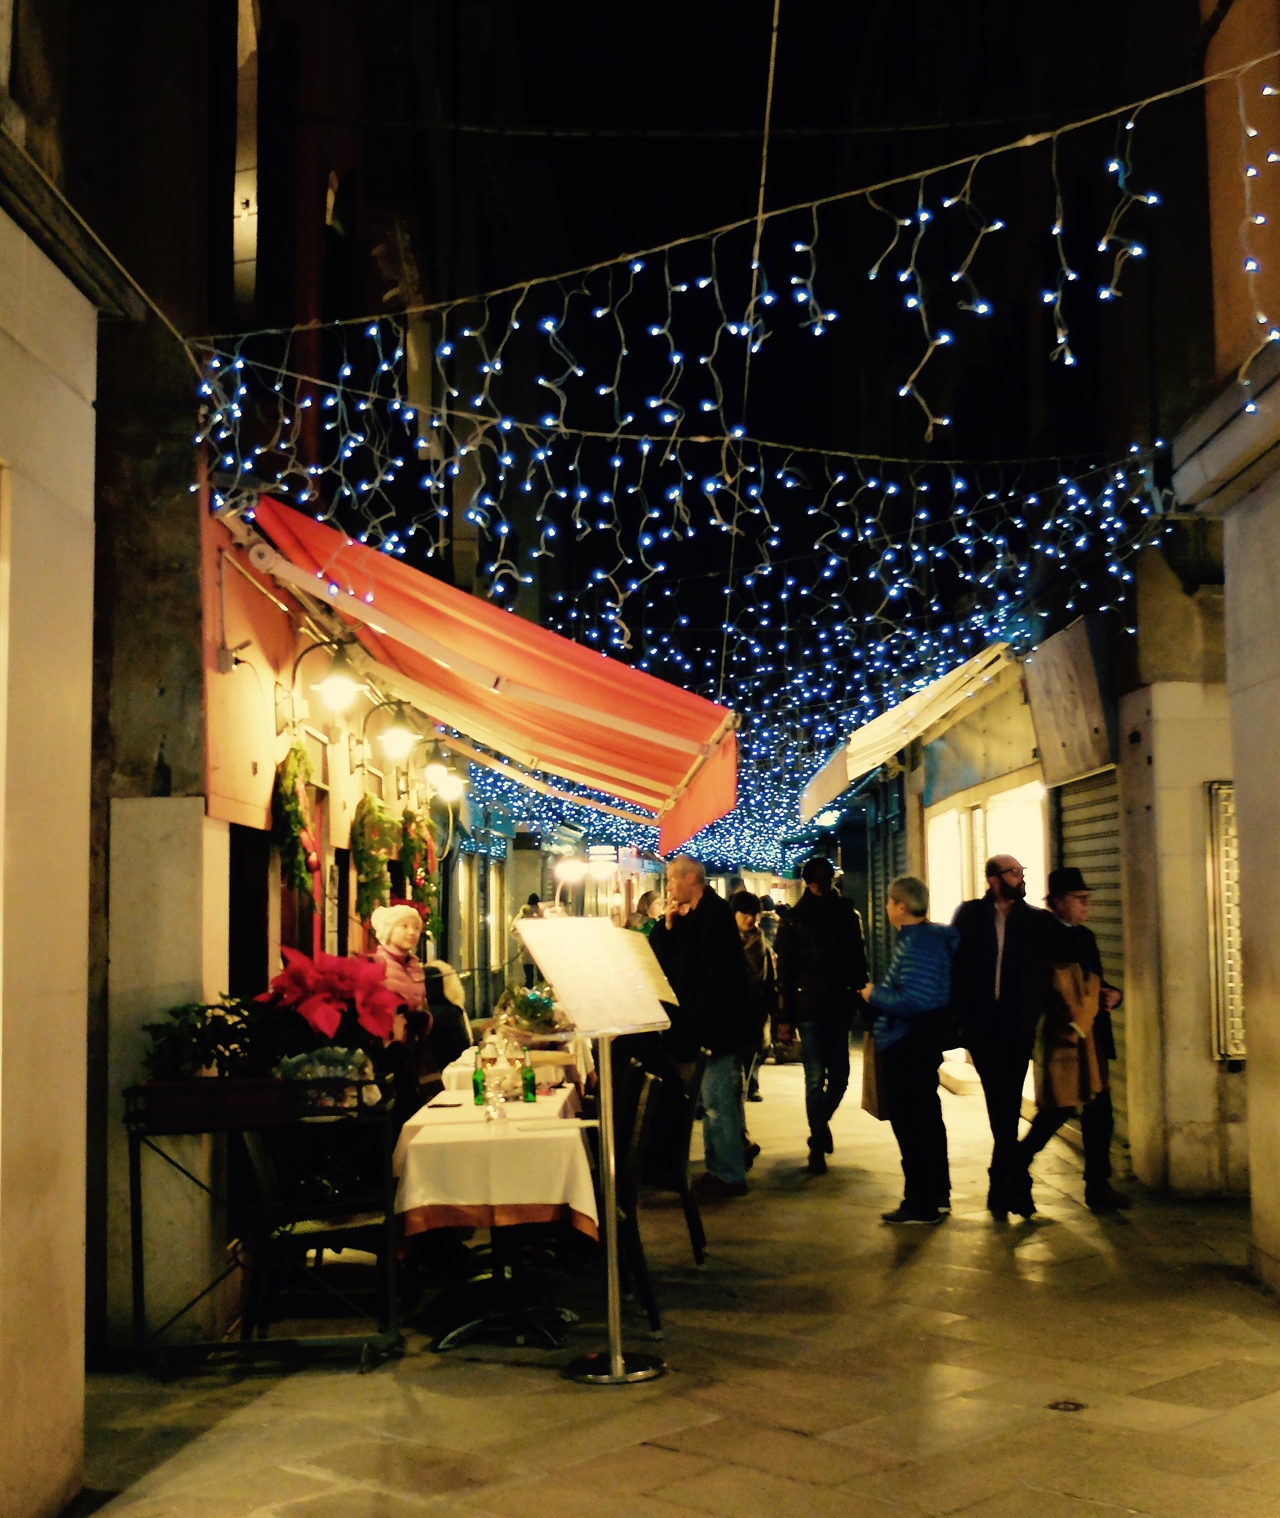 반짝이는 인공의 별빛 아래 캐노피를 치고 손님을 맞고 있는 베네치아 거리의 카페. 아를의 포룸 광장에 있는 한 카페를 그린 빈센트 반 고흐의 '밤의 카페 테라스'와 비슷한 구도입니다. 